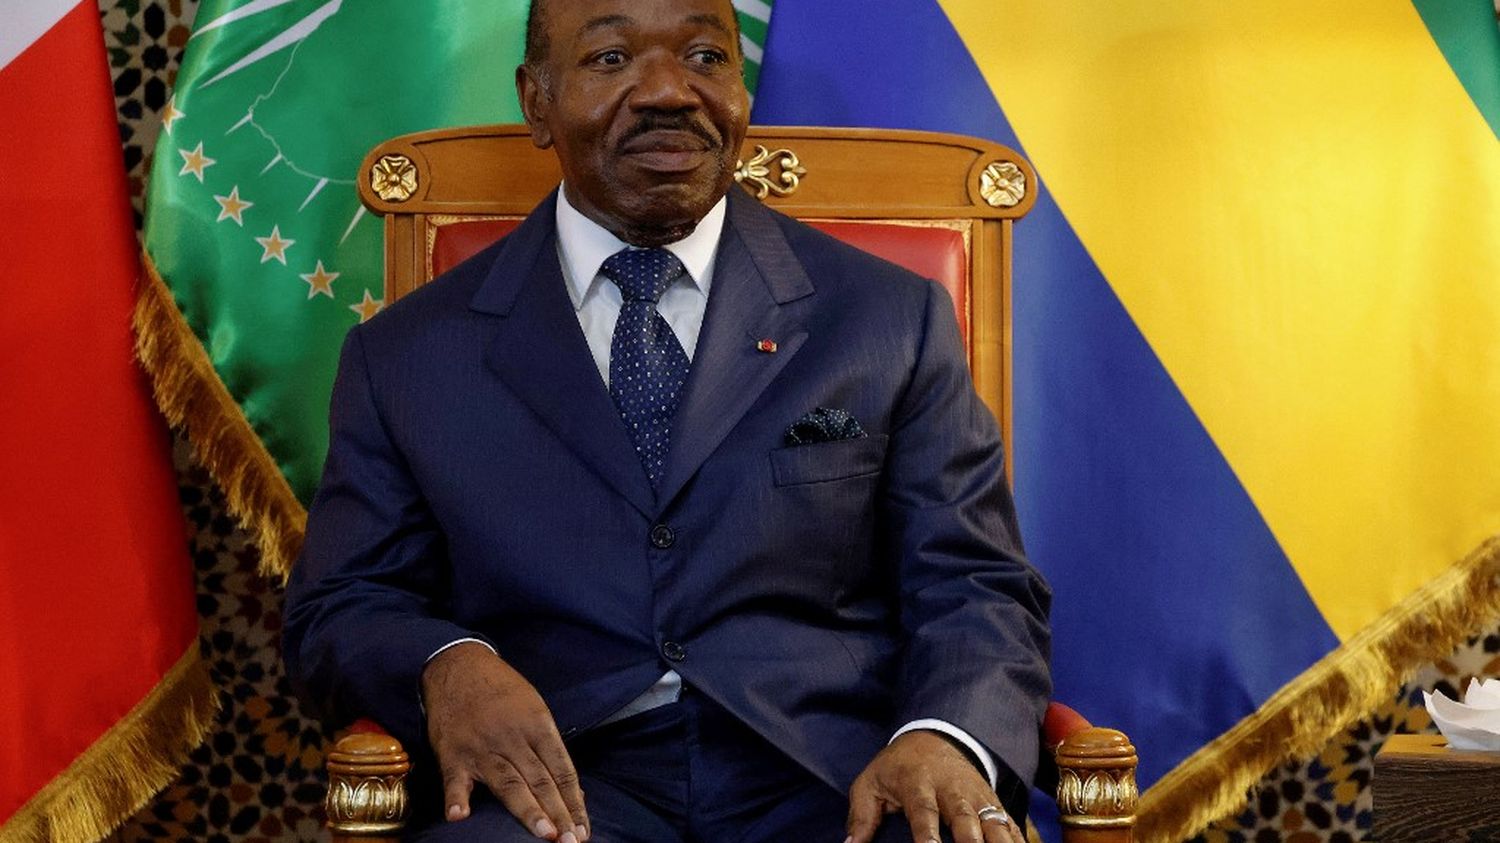 De afgezette president Ali Bongo is “vrij om naar het buitenland te gaan”, verklaarde de generaal die hem ten val bracht